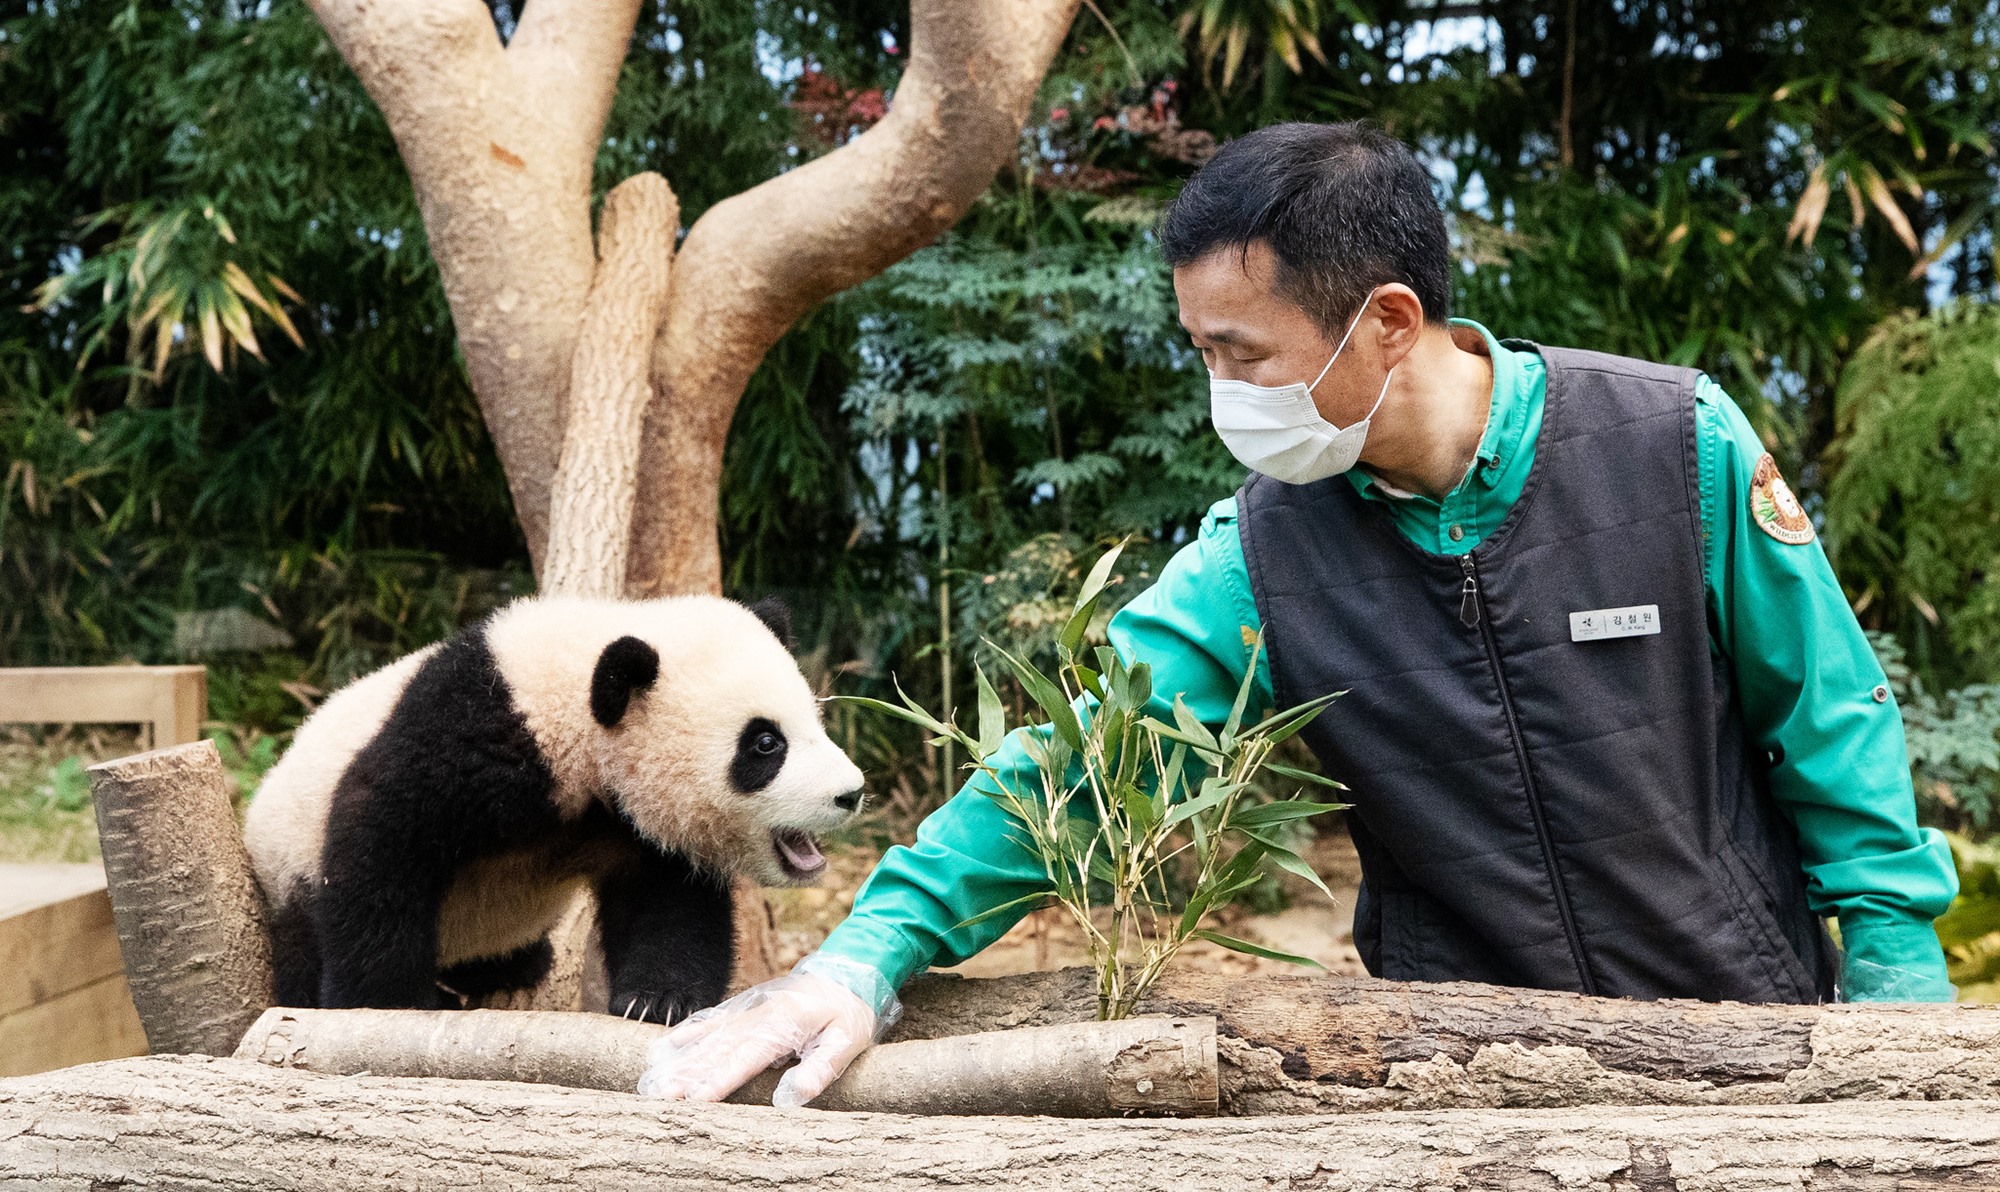 La foto muestra a Fu Bao, cuando tenía 6 meses, y a su cuidador Kang Cherwon, a quienes los periodistas de Korea.net conocieron en enero de 2021, en el 'Panda World' del parque temático 